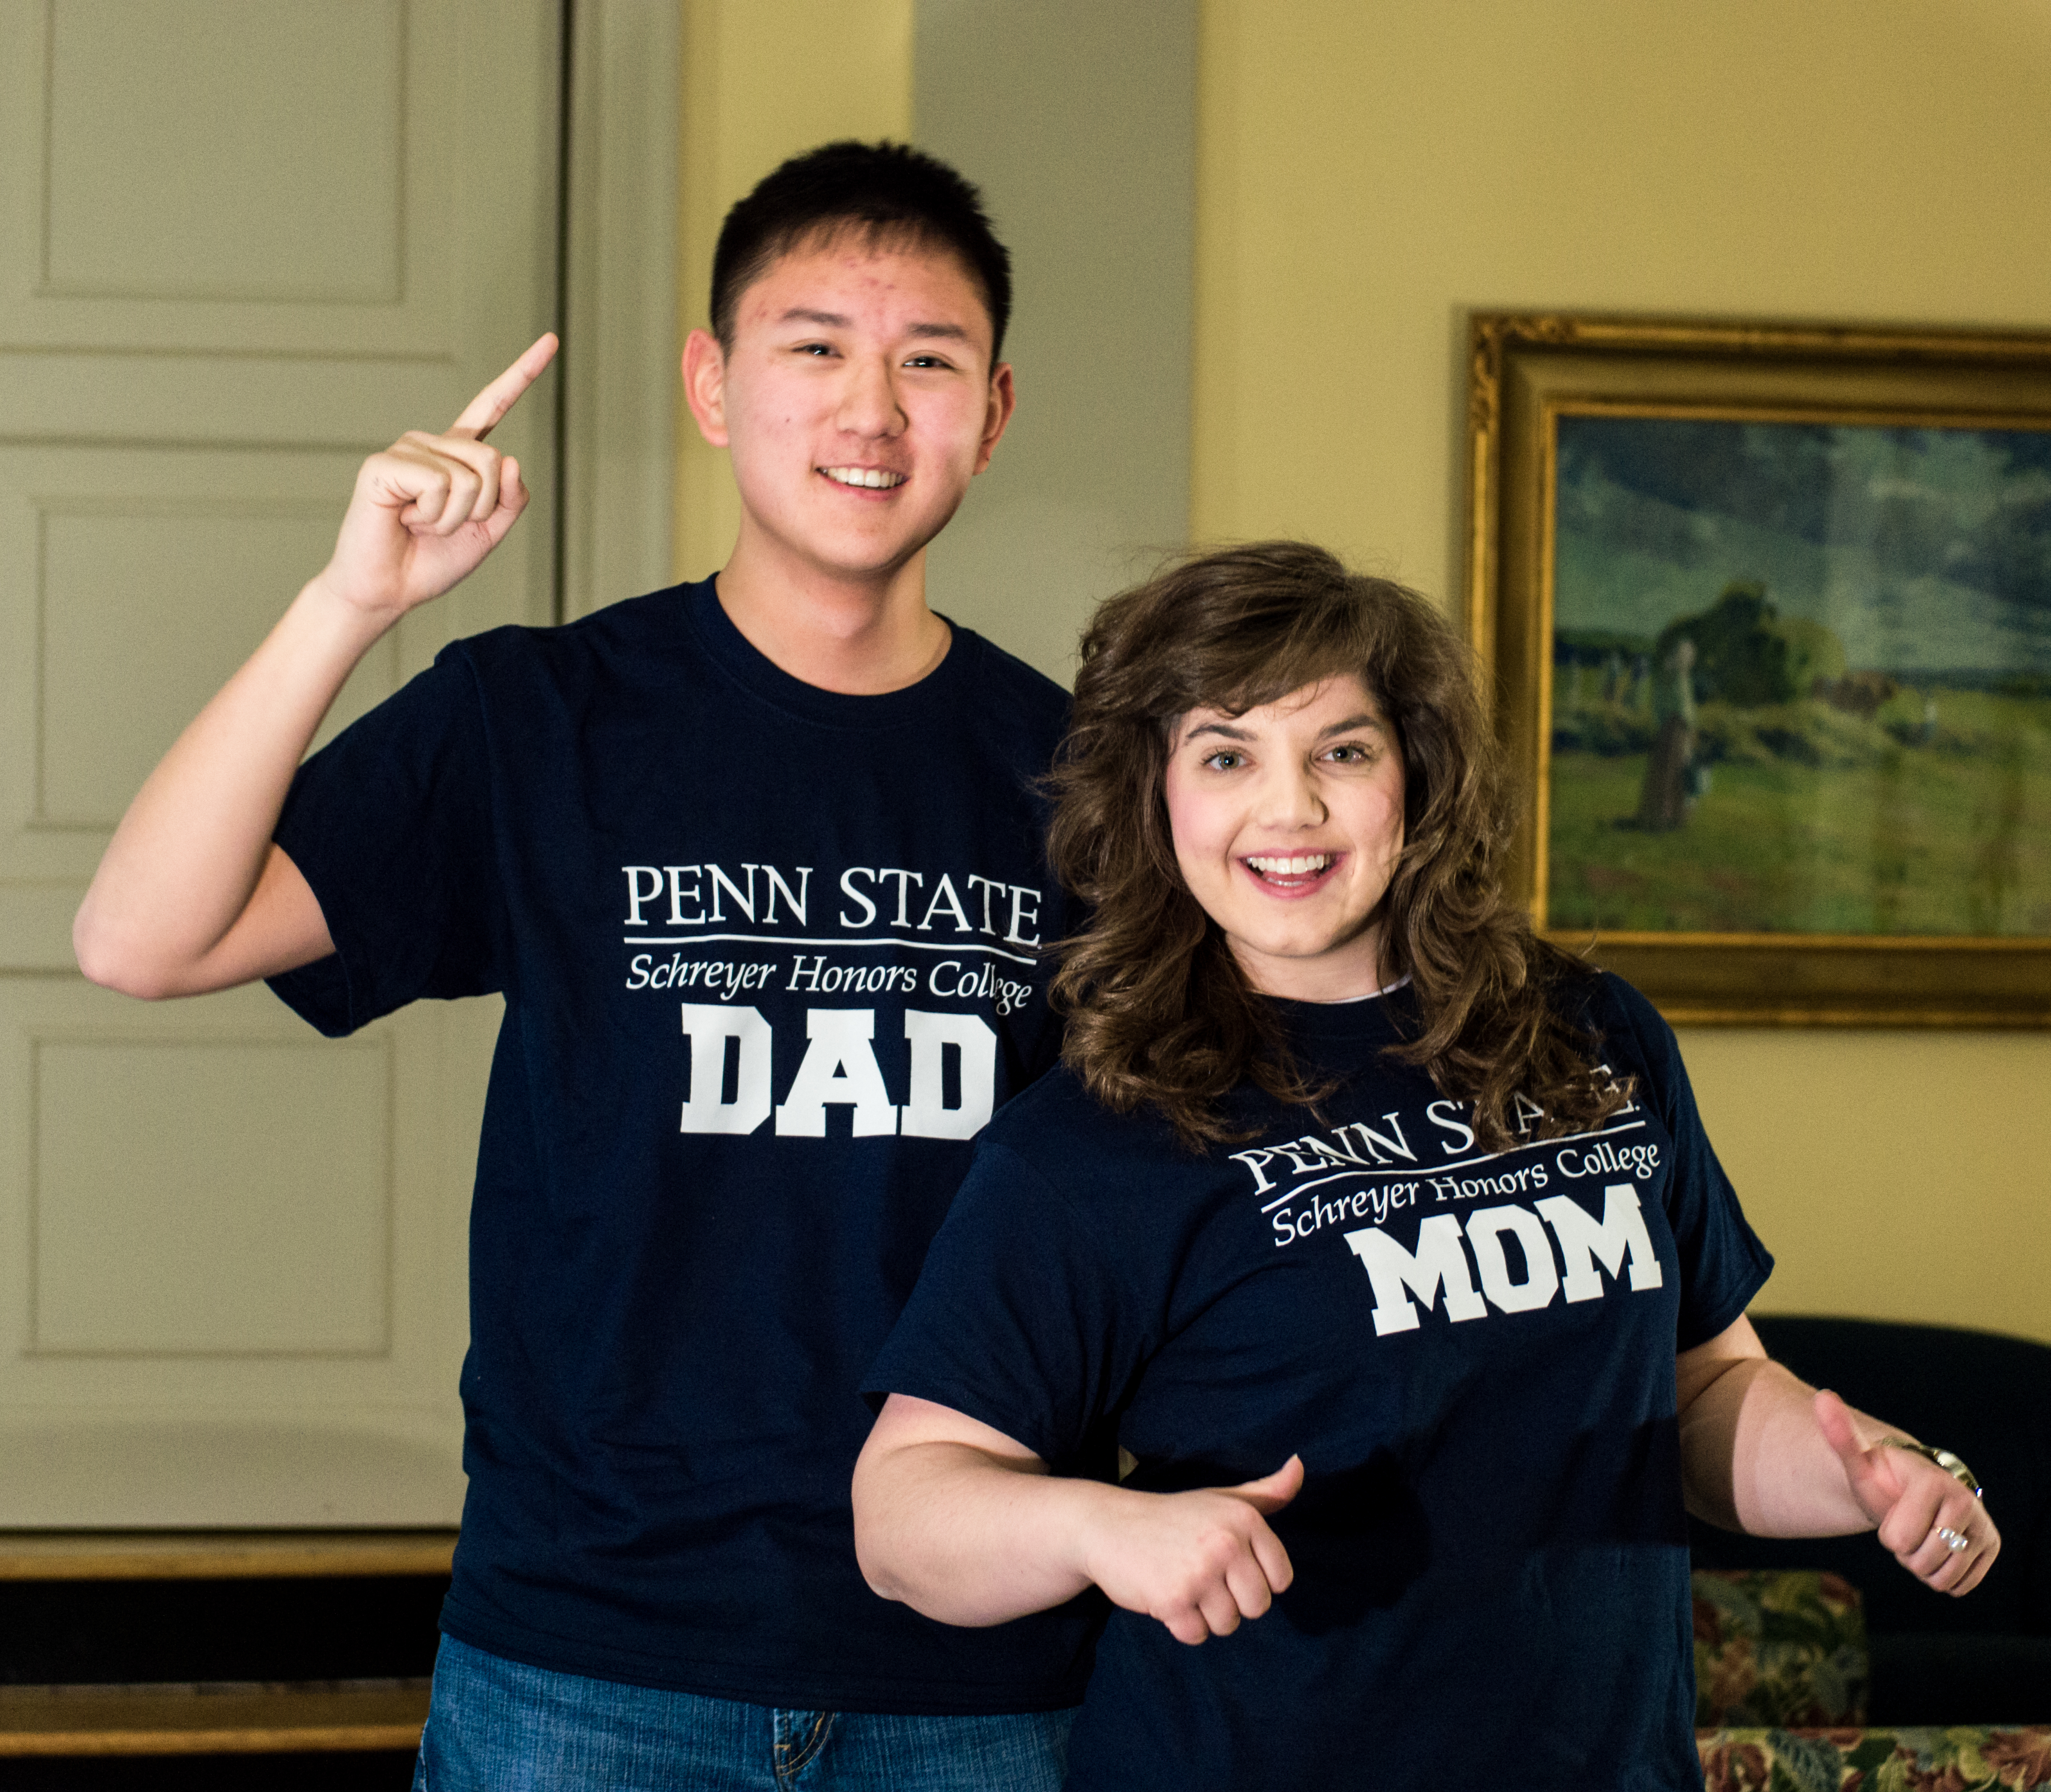 penn state dad t shirt